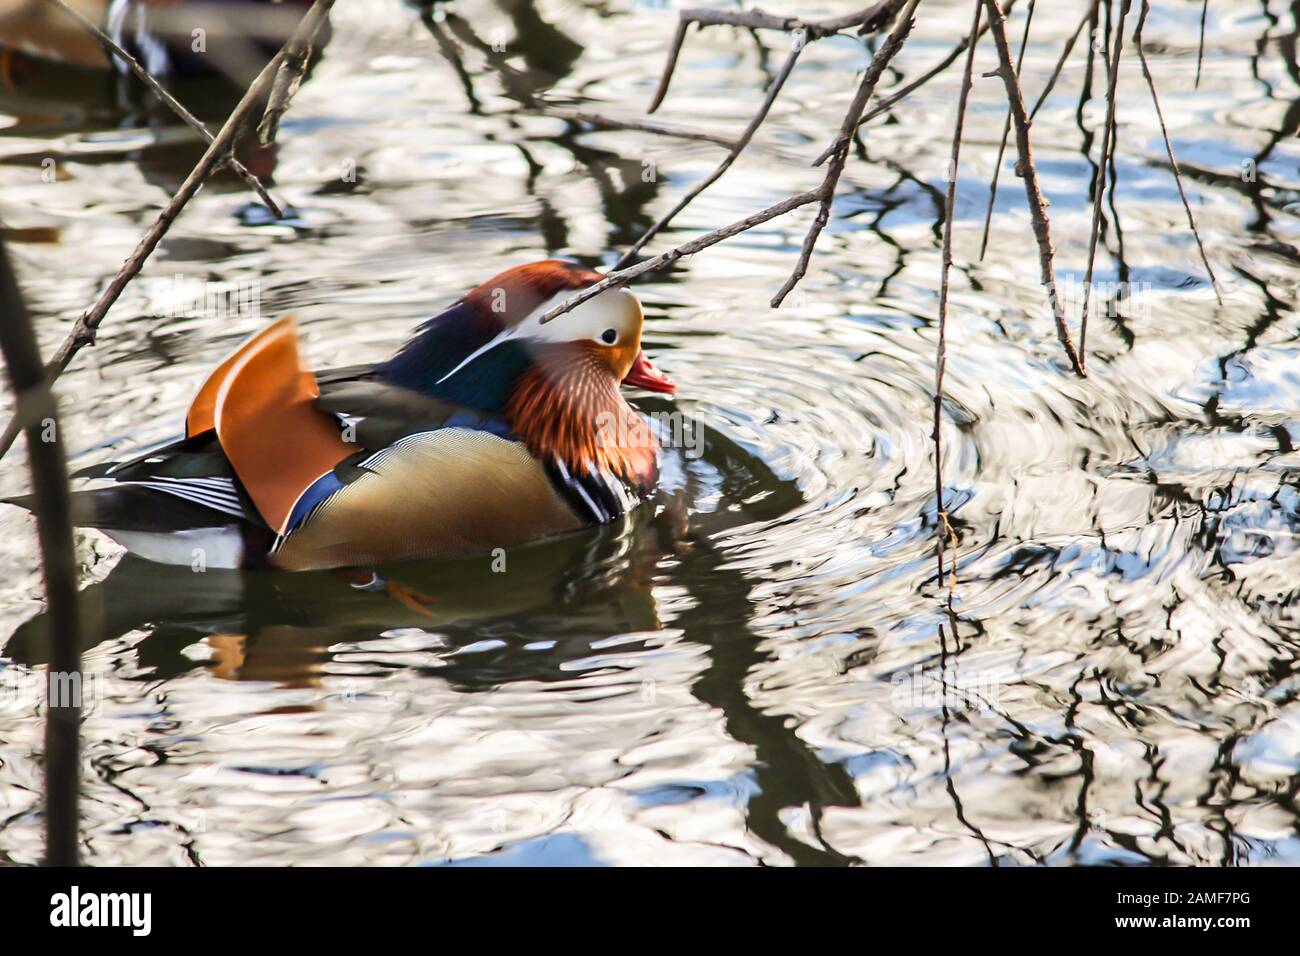 Un mandarino anatra maschio è nuoto nel lago. La vita degli uccelli selvatici nel parco. Una buona immagine per un sito su uccelli, anatre, fauna selvatica, arte, pittura. Foto Stock